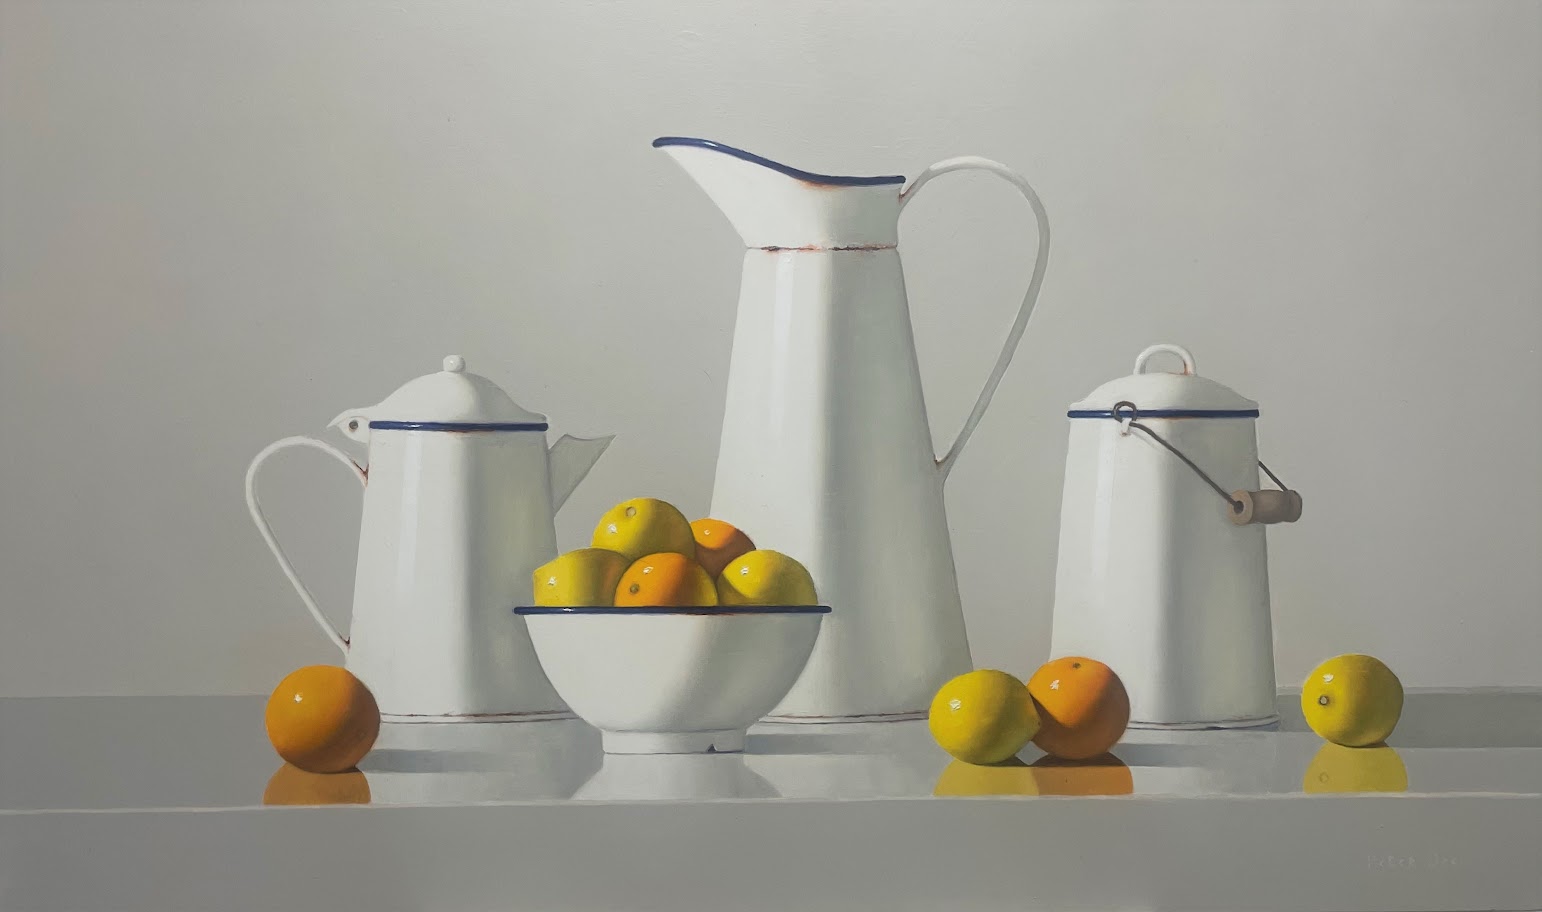 Vintage Enamelware with Lemons and Oranges  by Peter Dee